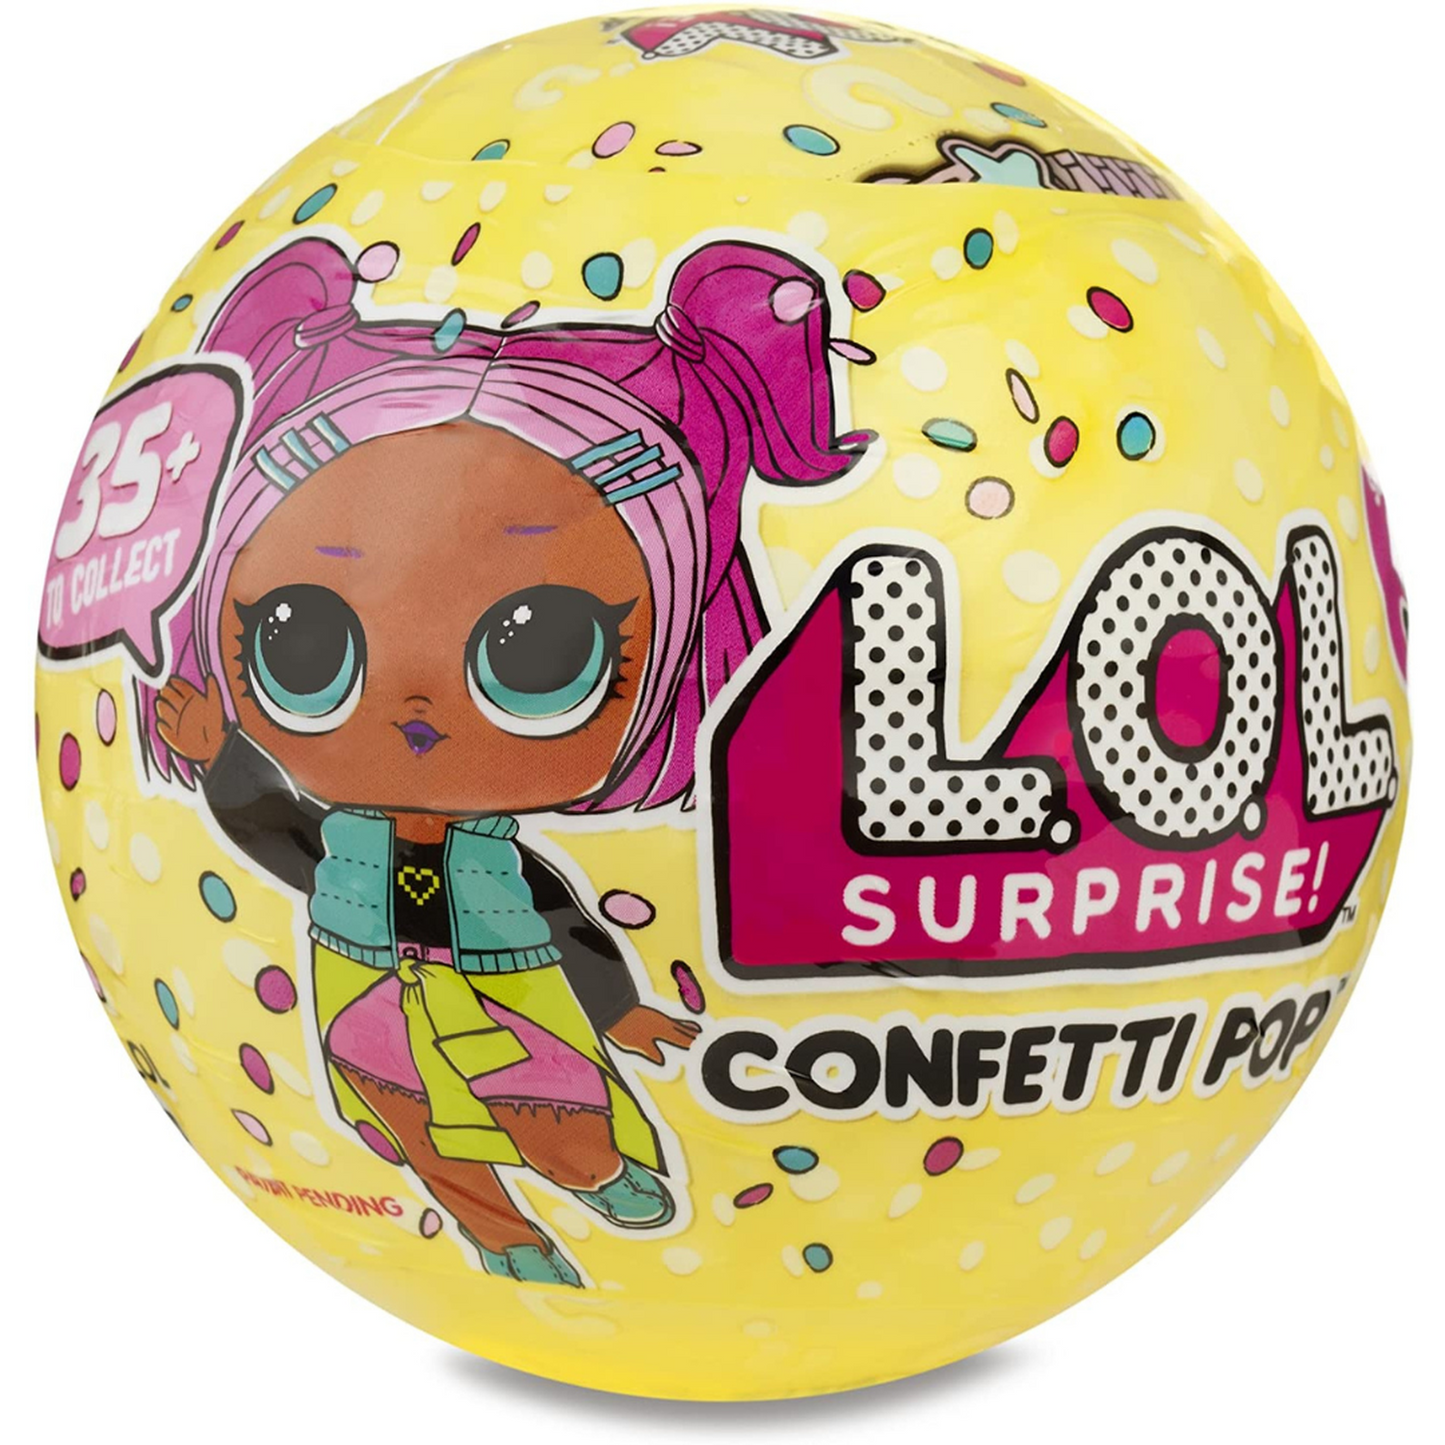 L.O.L. Surprise! Confetti